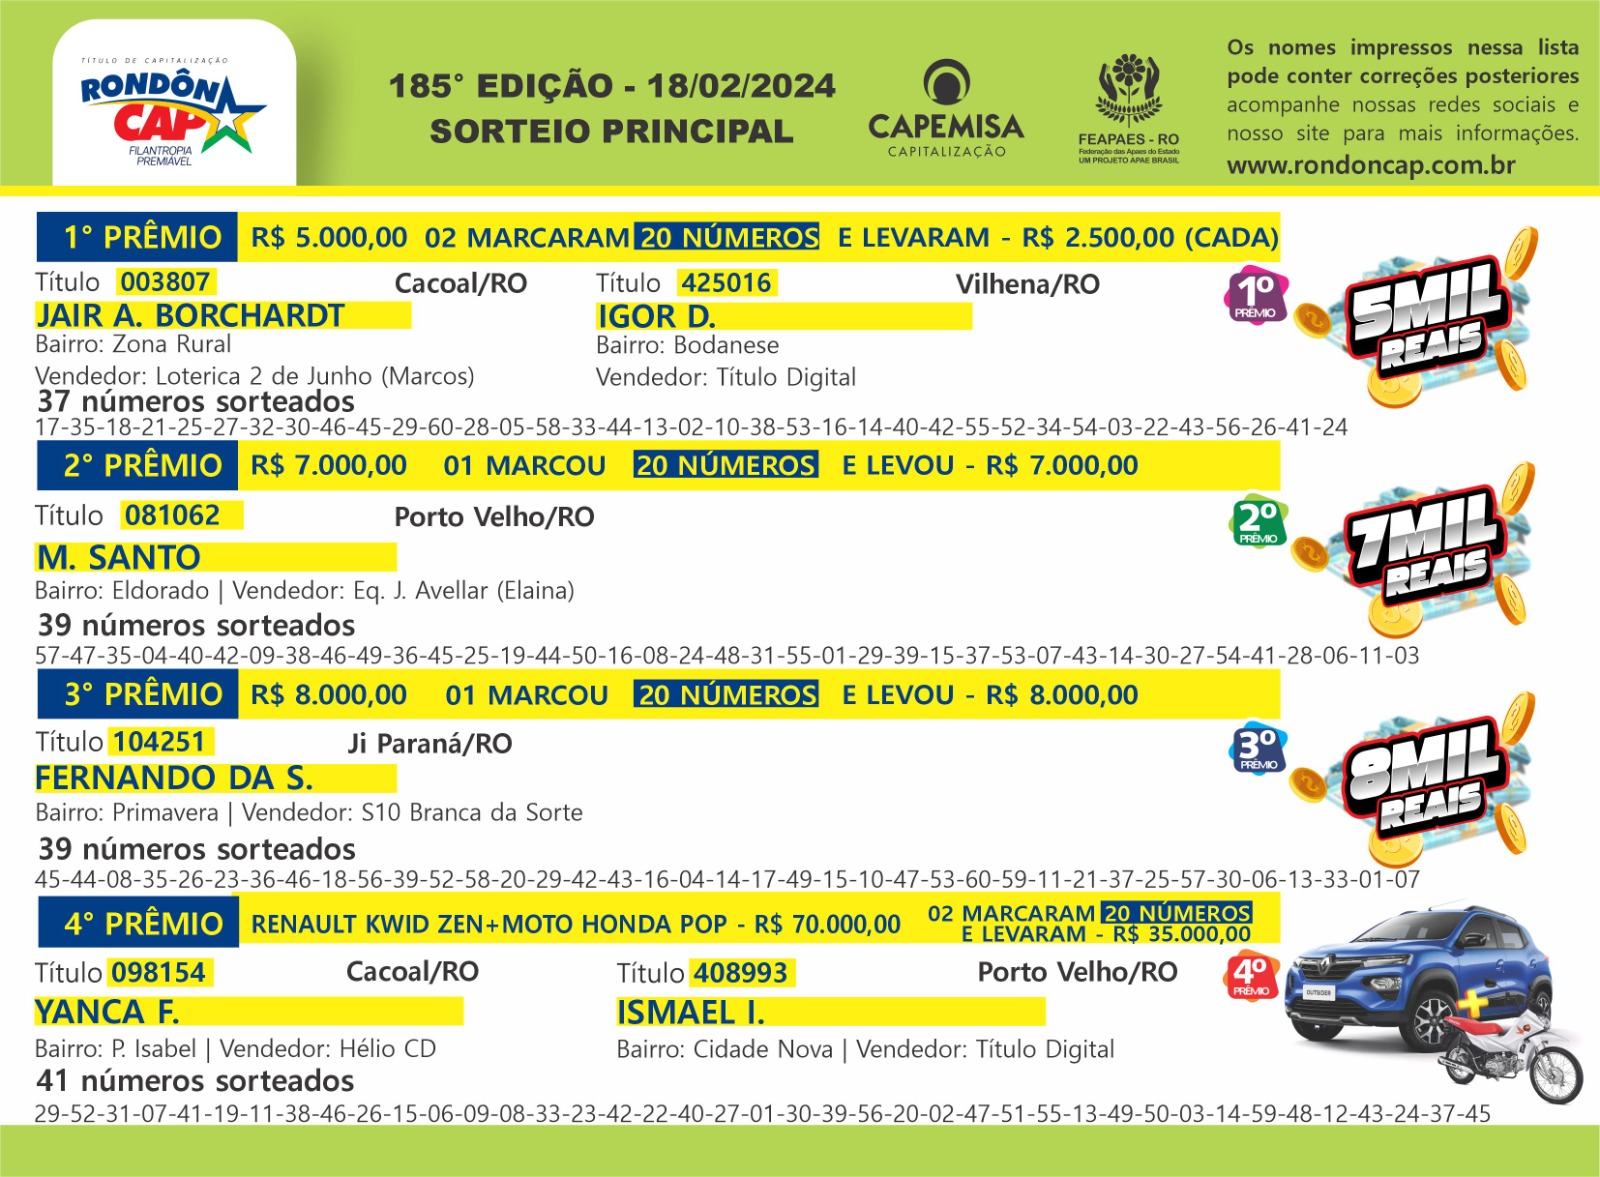 Rondôncap sorteou um Renault Kwid junto com uma Honda Pop e mais 43 prêmios em dinheiro - News Rondônia